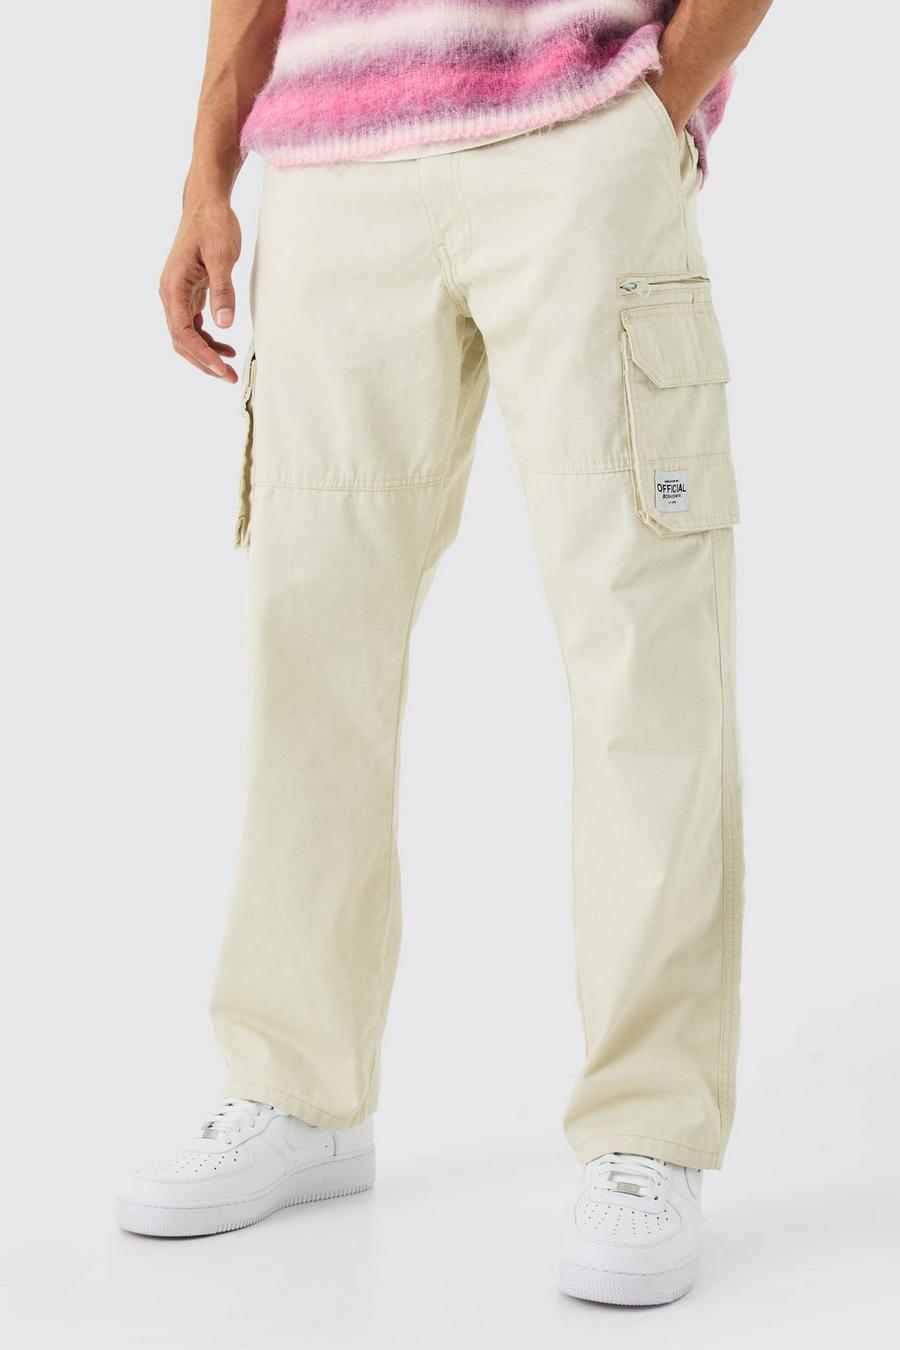 Pantaloni Cargo fissi in nylon ripstop con zip ed etichetta in tessuto, Stone